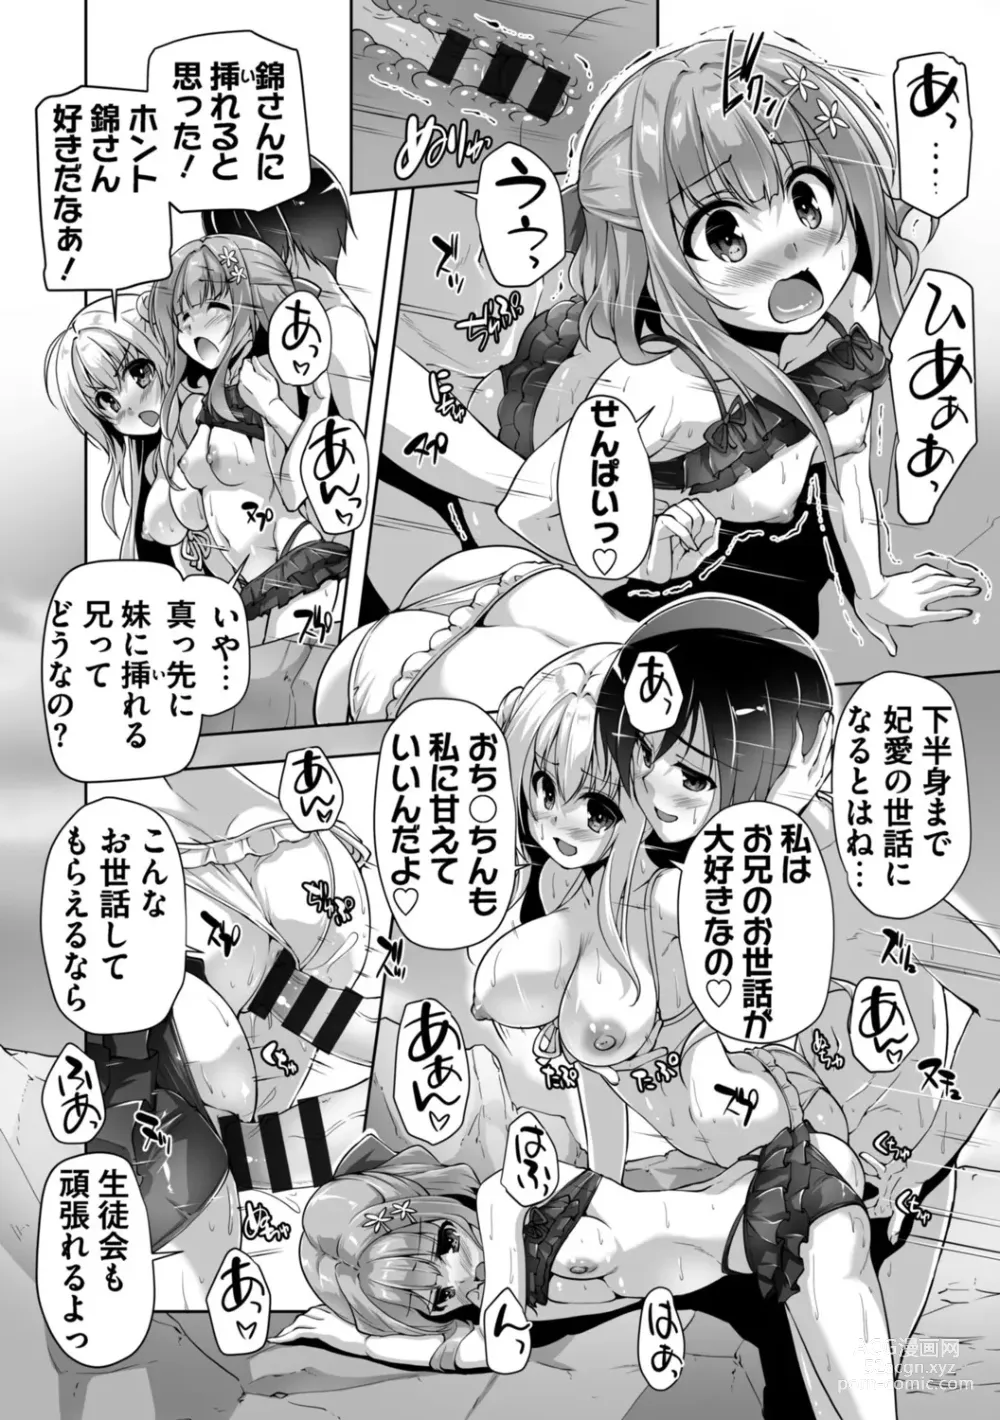 Page 200 of manga Hamidashi Creative Adult Edition